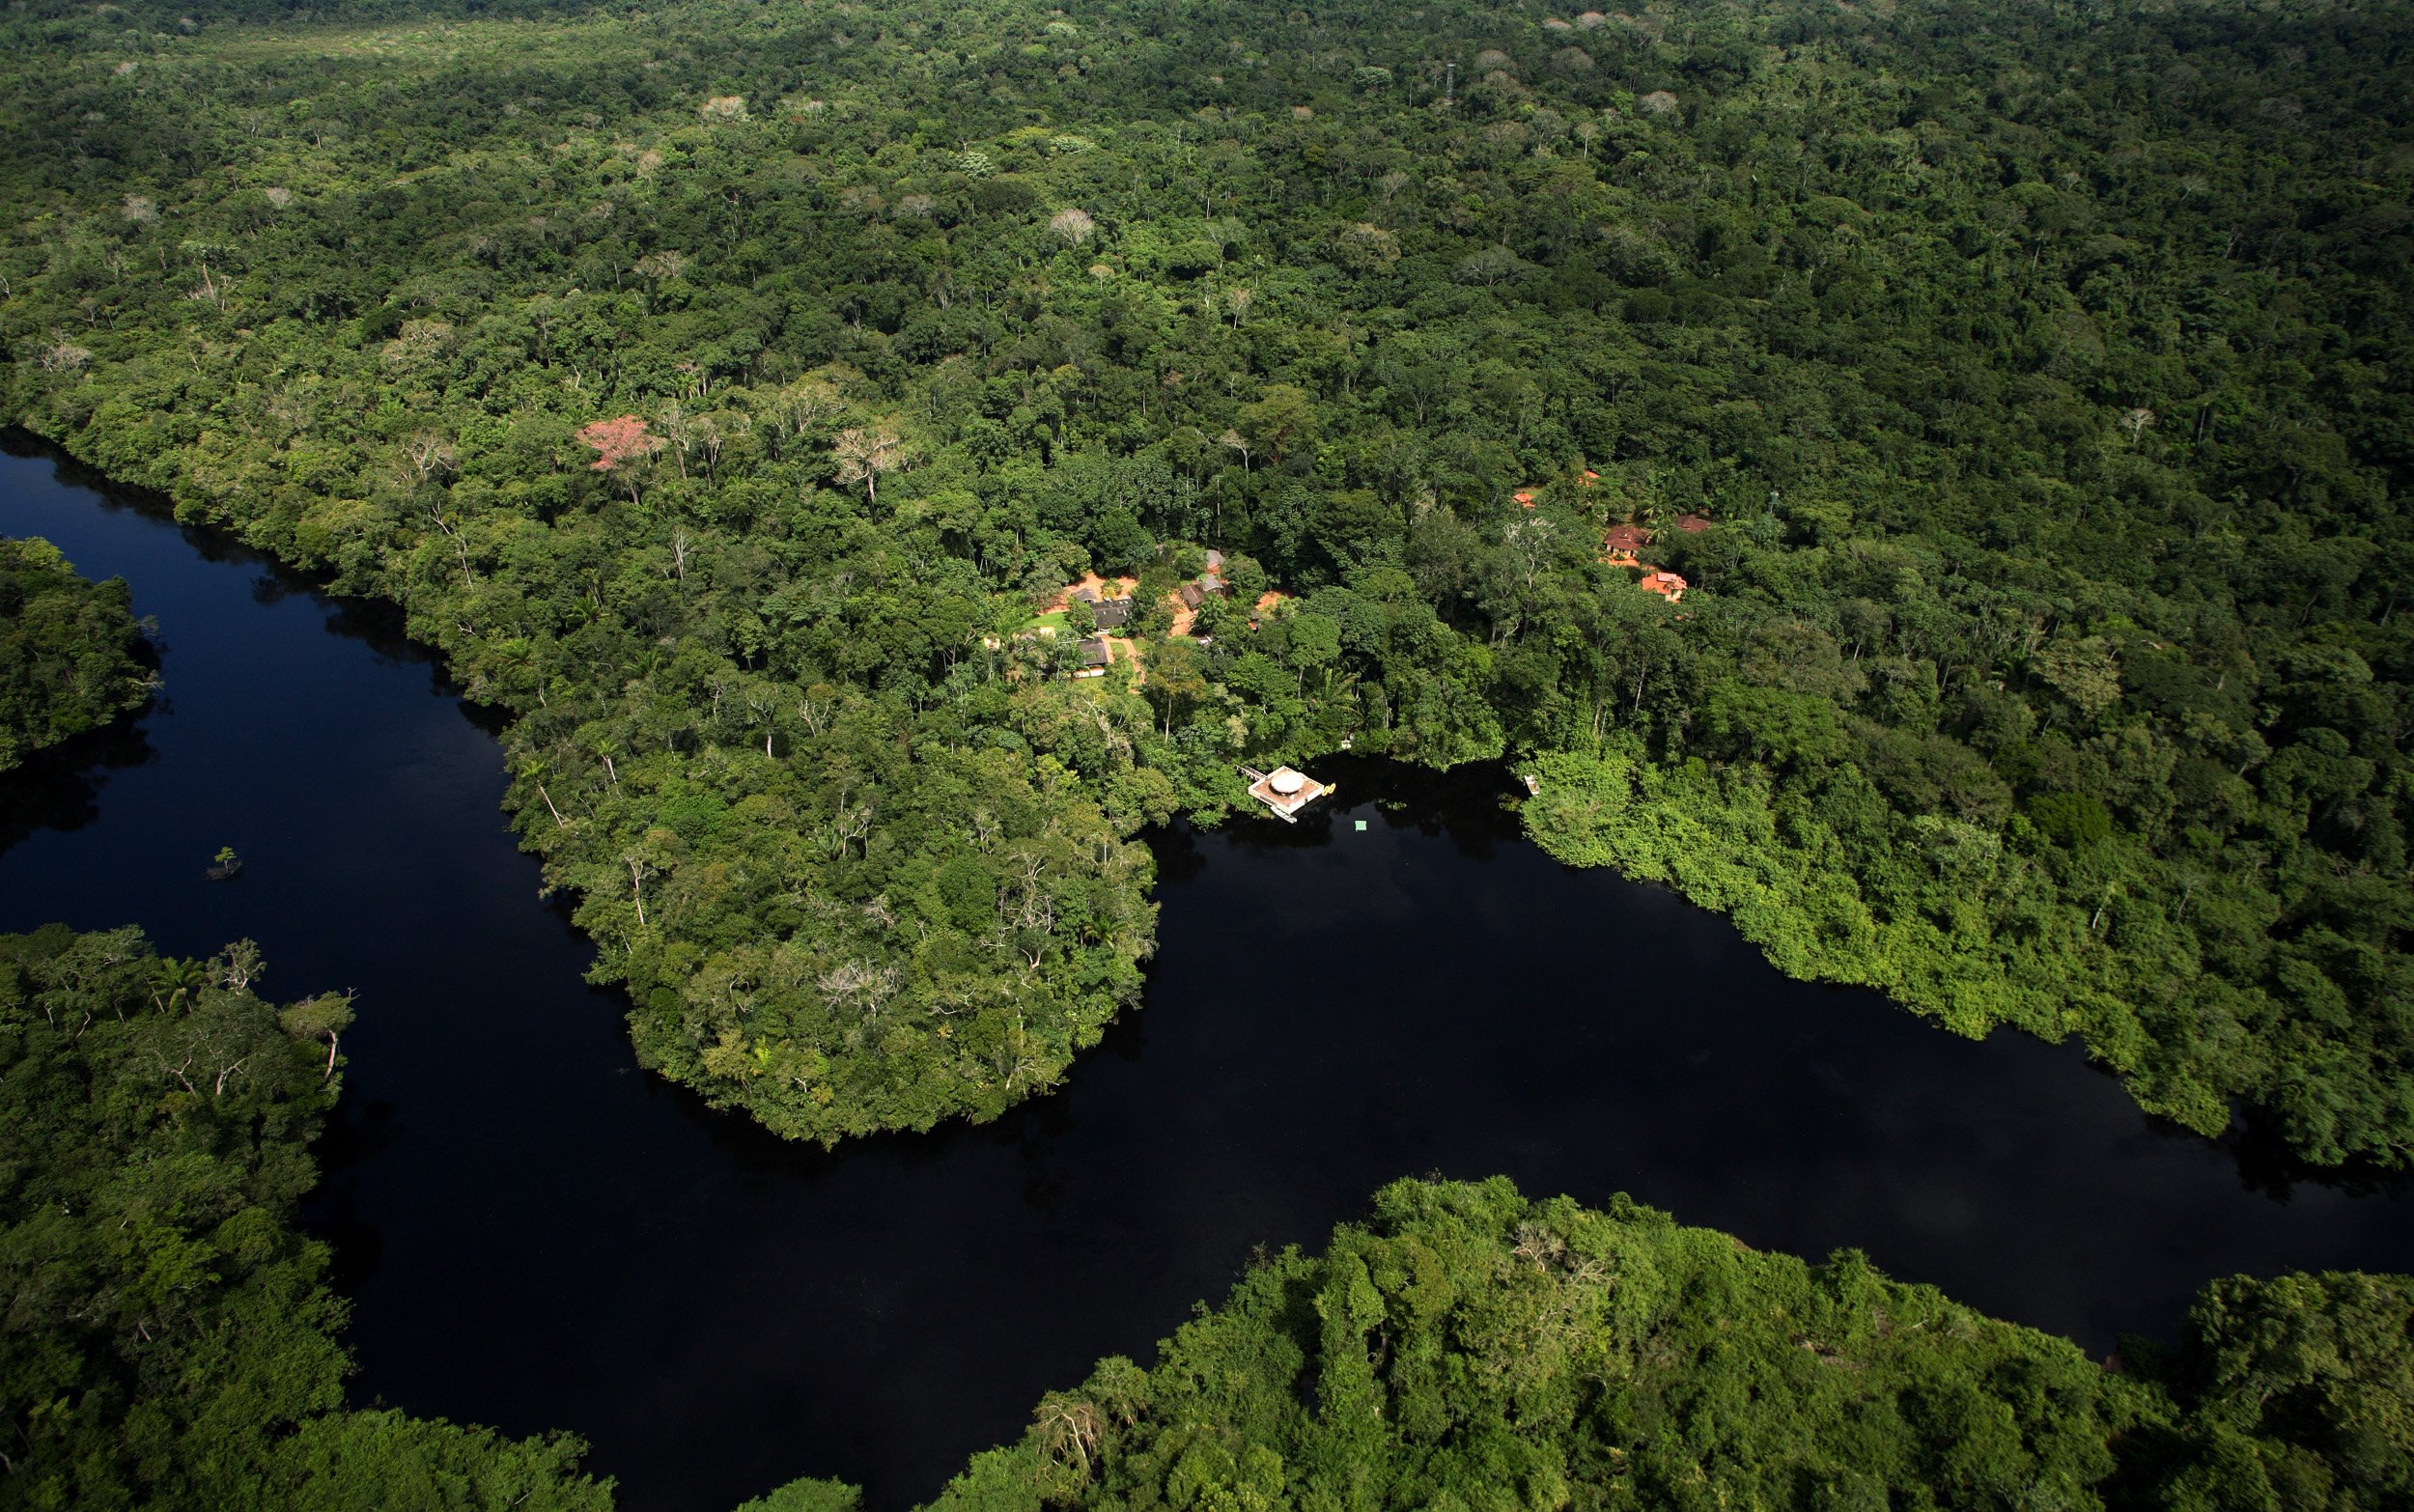 Джунгли бразилии. Бразилия тропические леса Сельва. Сельва амазонки, Южная Америка. Тропические леса амазонки в Бразилии. Амазонка Пантанал.